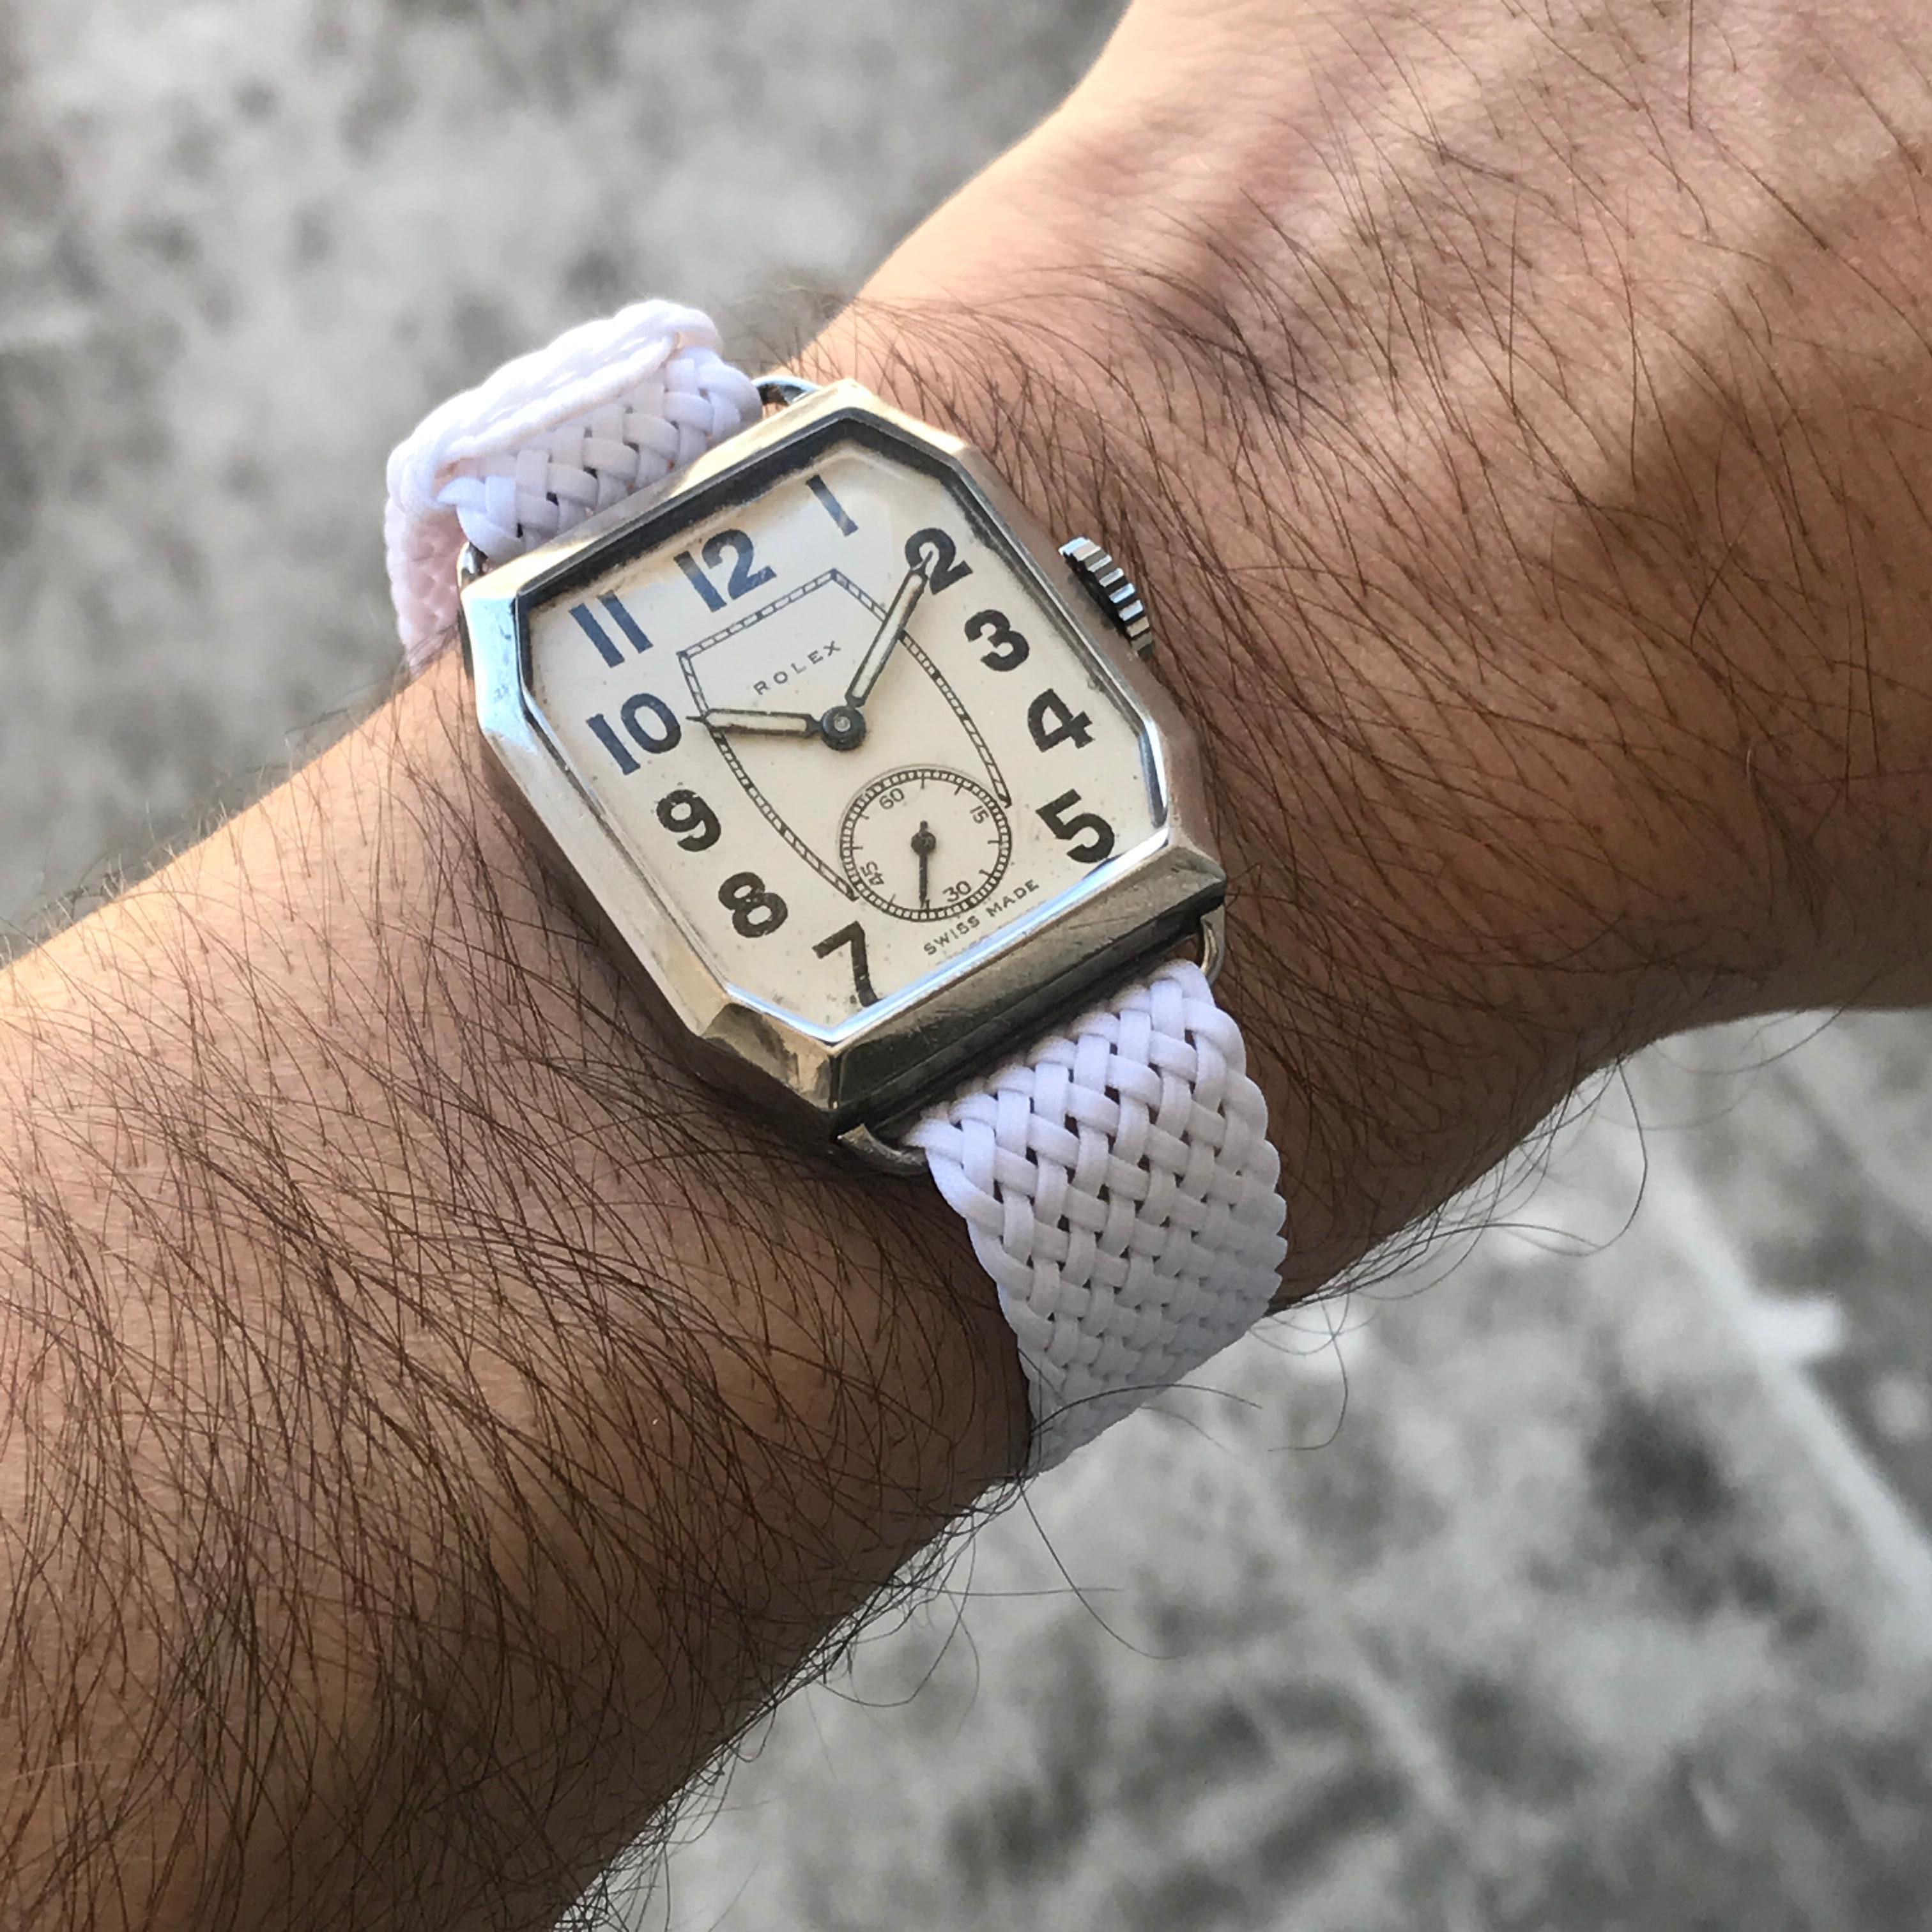 1930 rolex watch